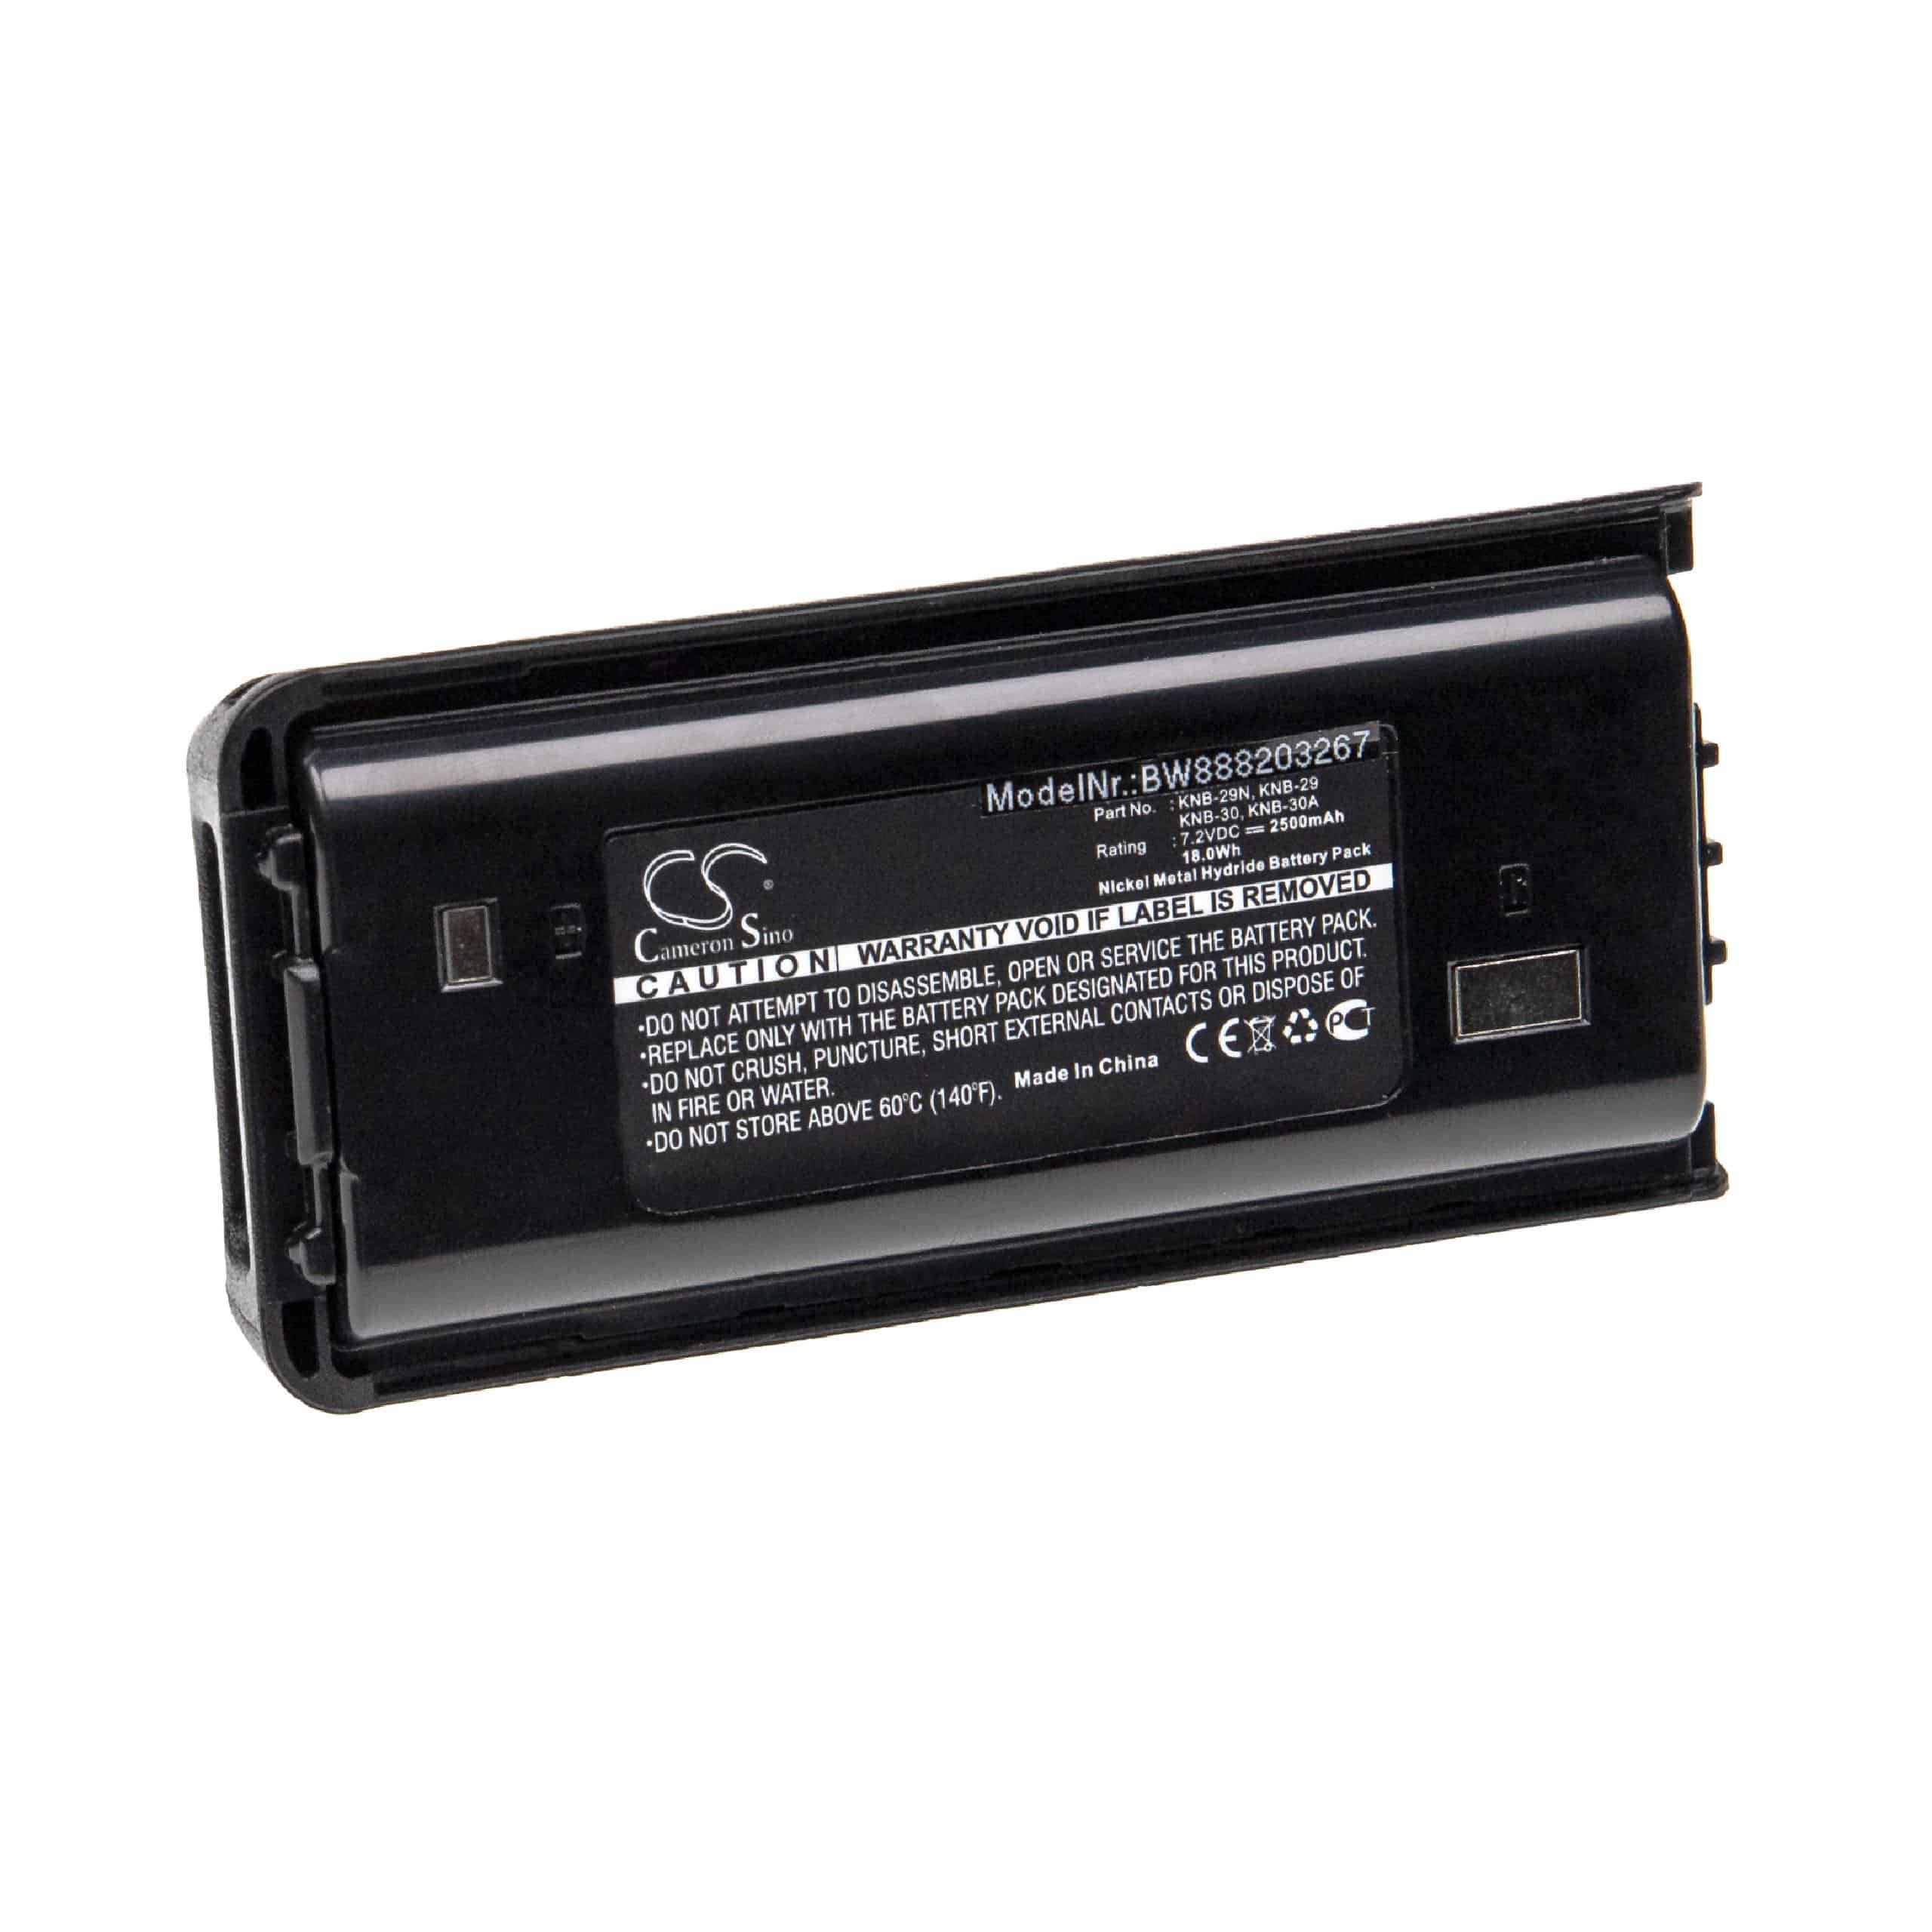 Batterie remplace Kenwood KNB-29N, KNB-29, KNB-30A, KNB-30 pour radio talkie-walkie - 2500mAh 7,2V NiMH